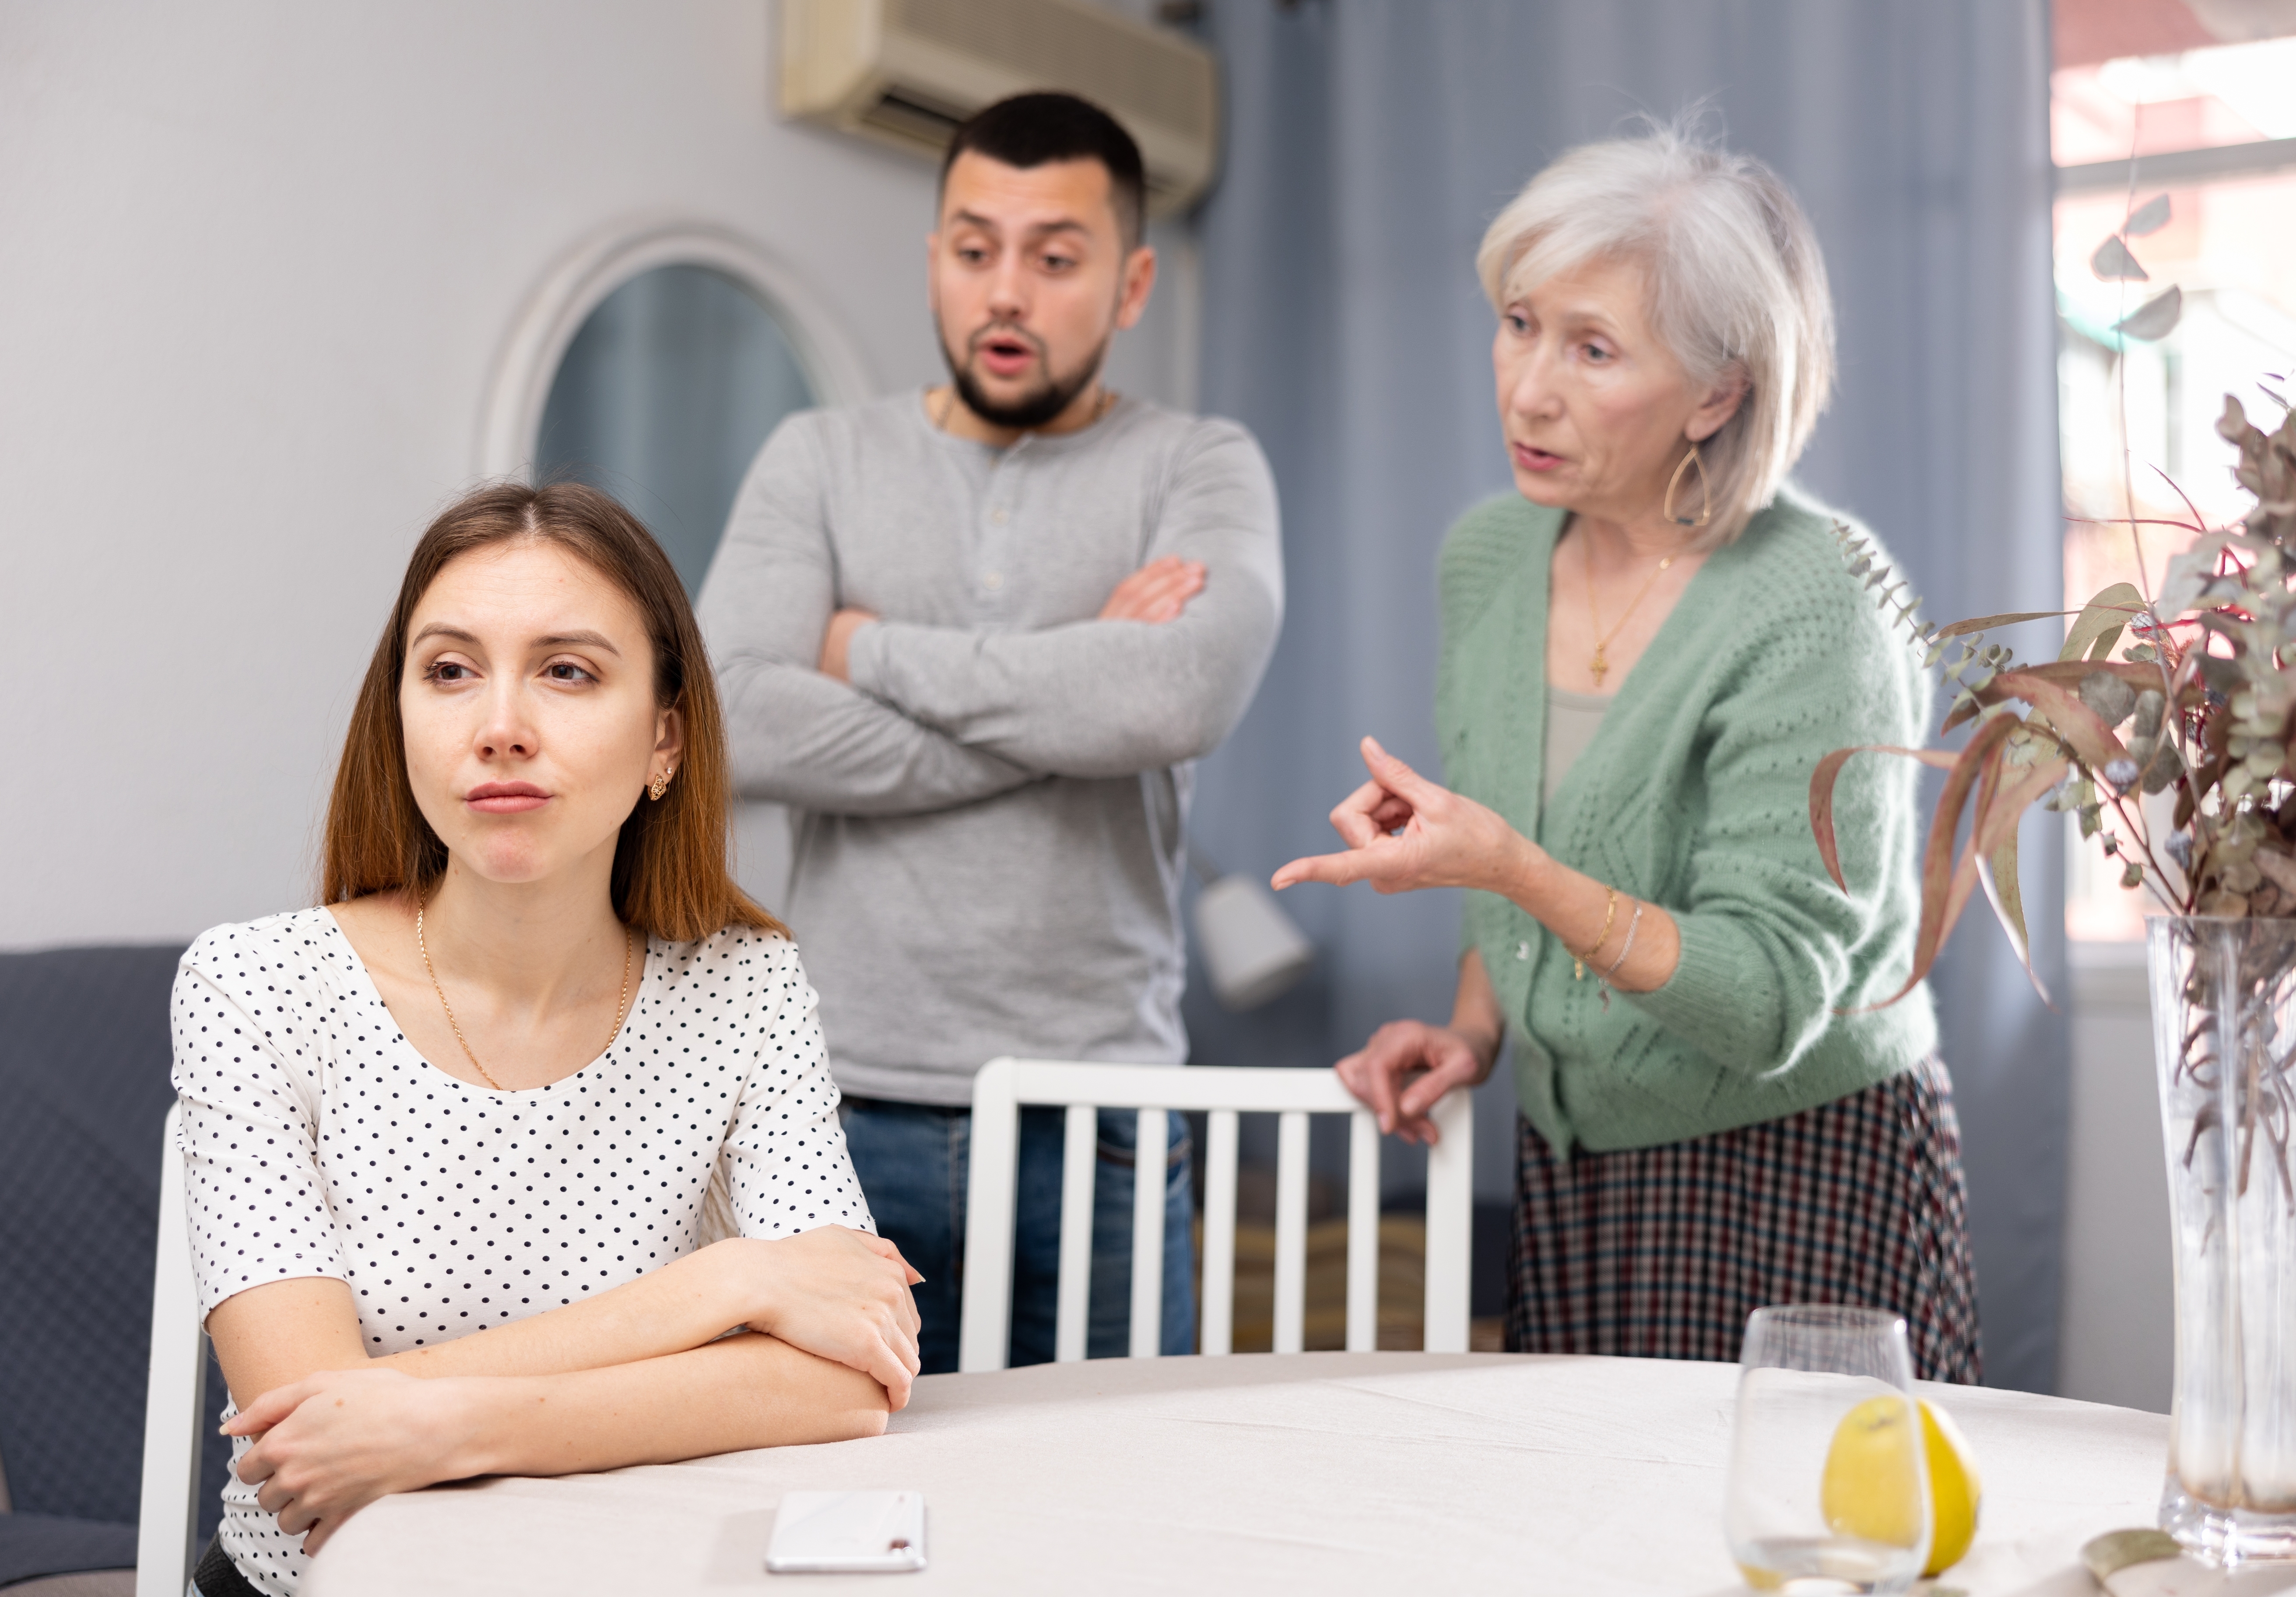 Eine weinende Frau, während ihr Mann und seine Mutter mit ihr sprechen | Quelle: Shutterstock